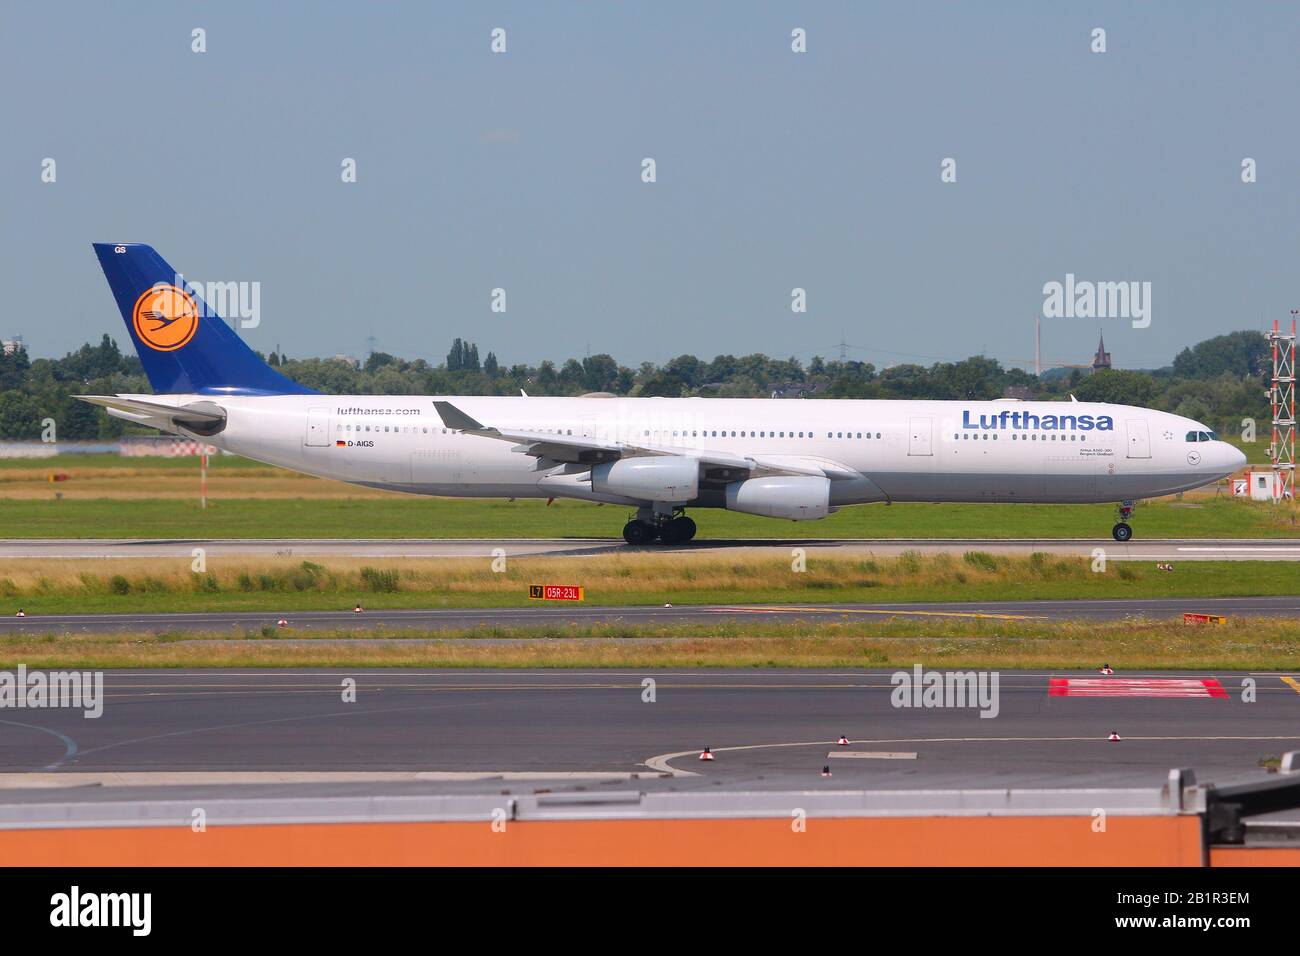 Dusseldorf, GERMANIA - 8 LUGLIO 2013: Lufthansa Airbus A340 all'aeroporto di Dusseldorf, Germania. Nel 2012 il Gruppo Lufthansa ha trasportato oltre 103 milioni di passeggeri. Foto Stock